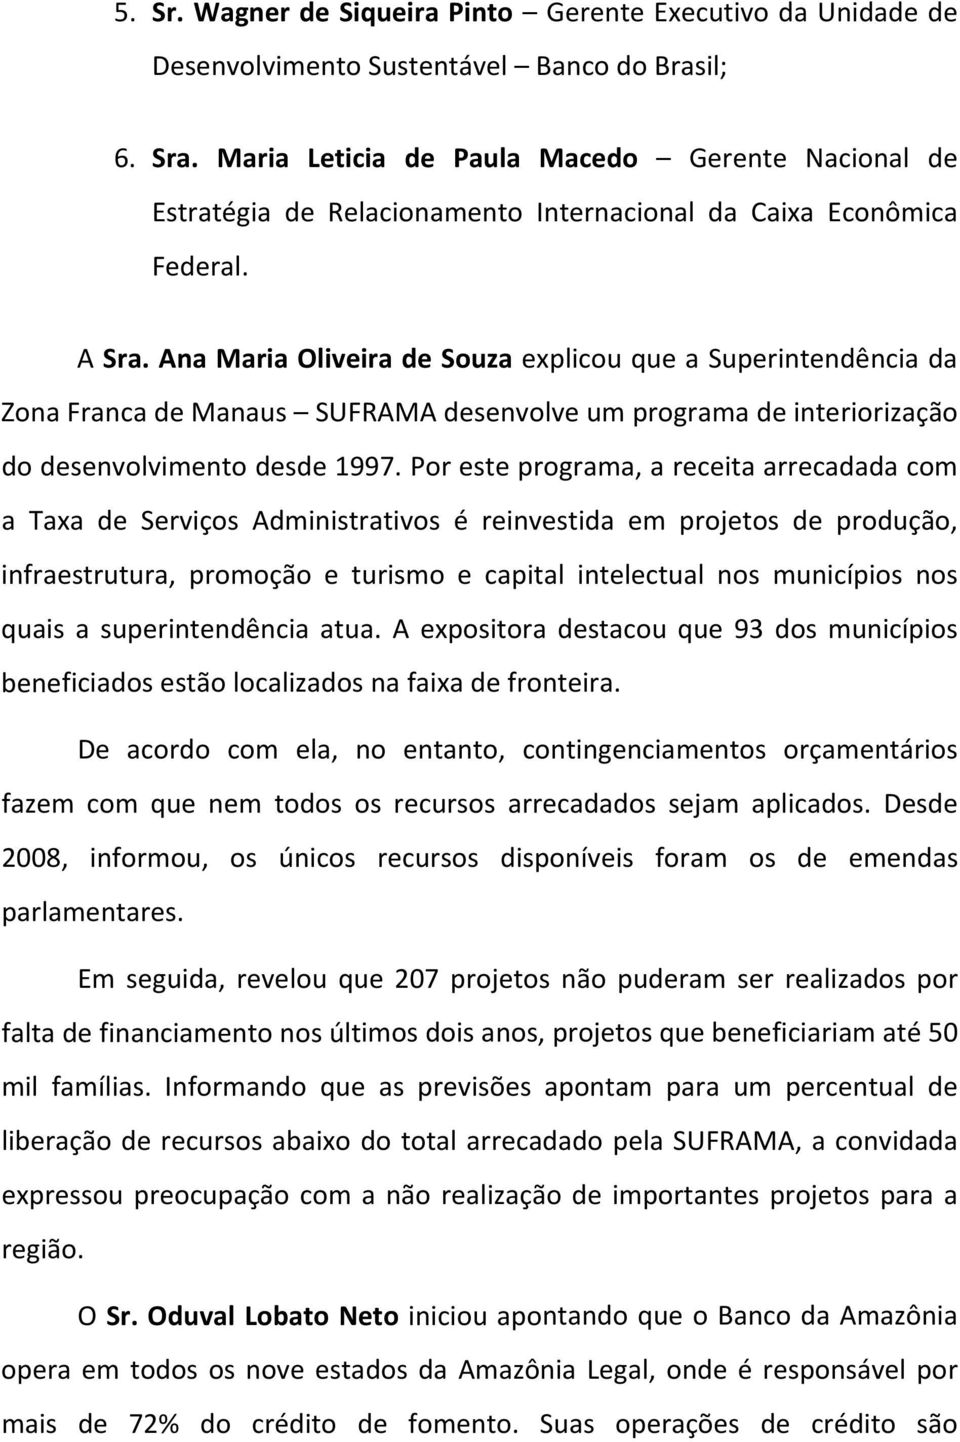 Ana Maria Oliveira de Souza explicou que a Superintendência da Zona Franca de Manaus SUFRAMA desenvolve um programa de interiorização do desenvolvimento desde 1997.